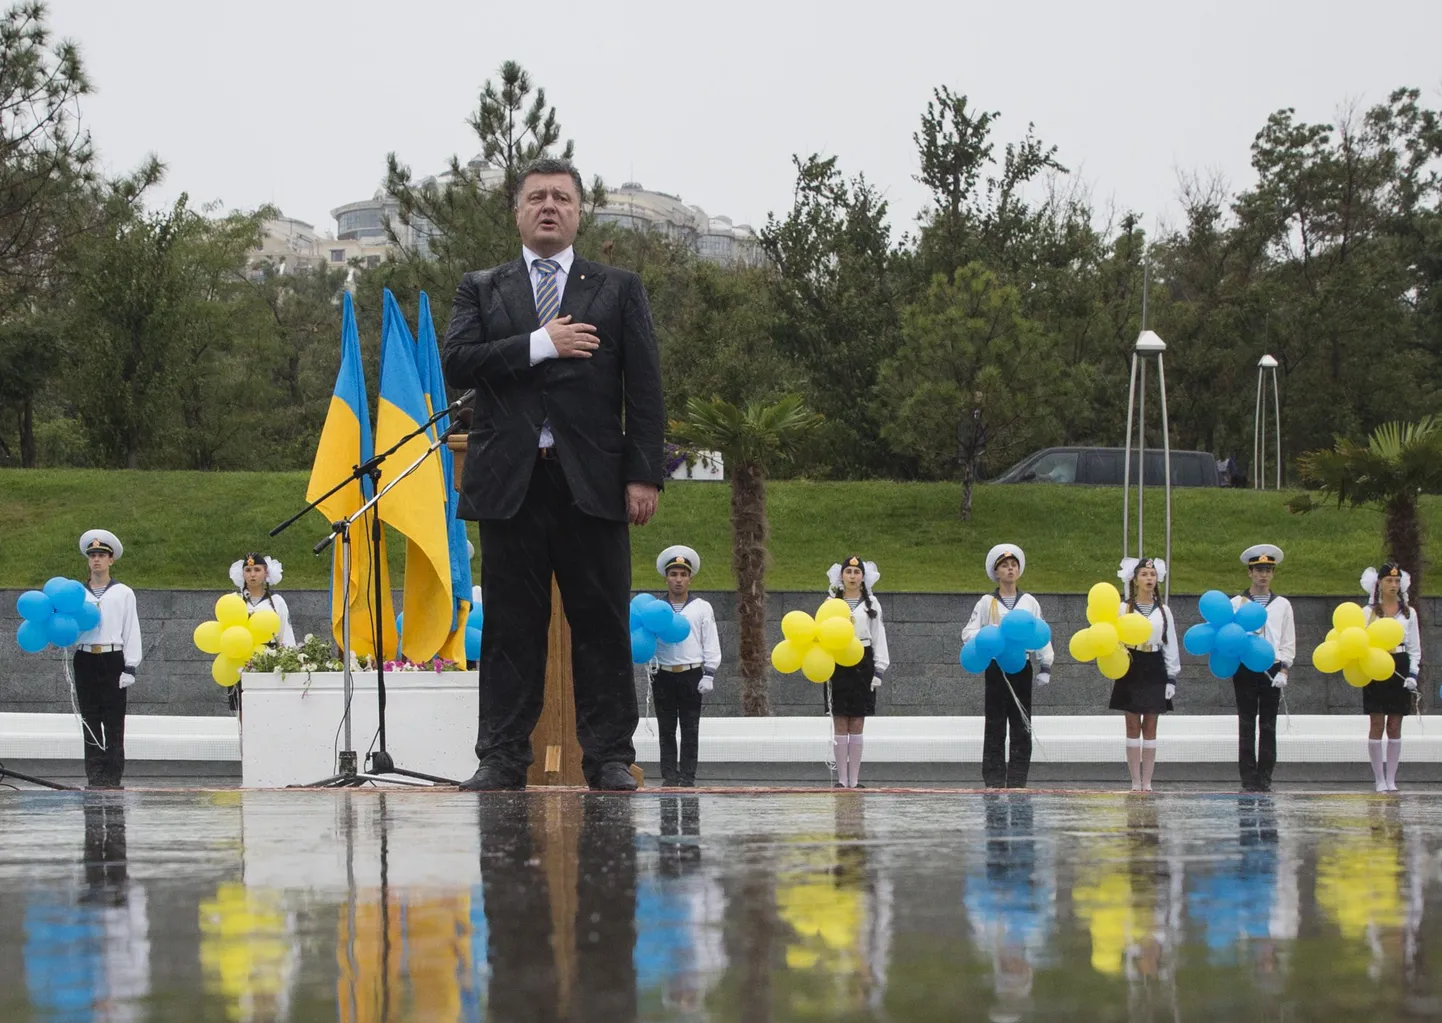 Ukraina noored president Petro Porošenko taustal iseseisvusparaadil Odessas.